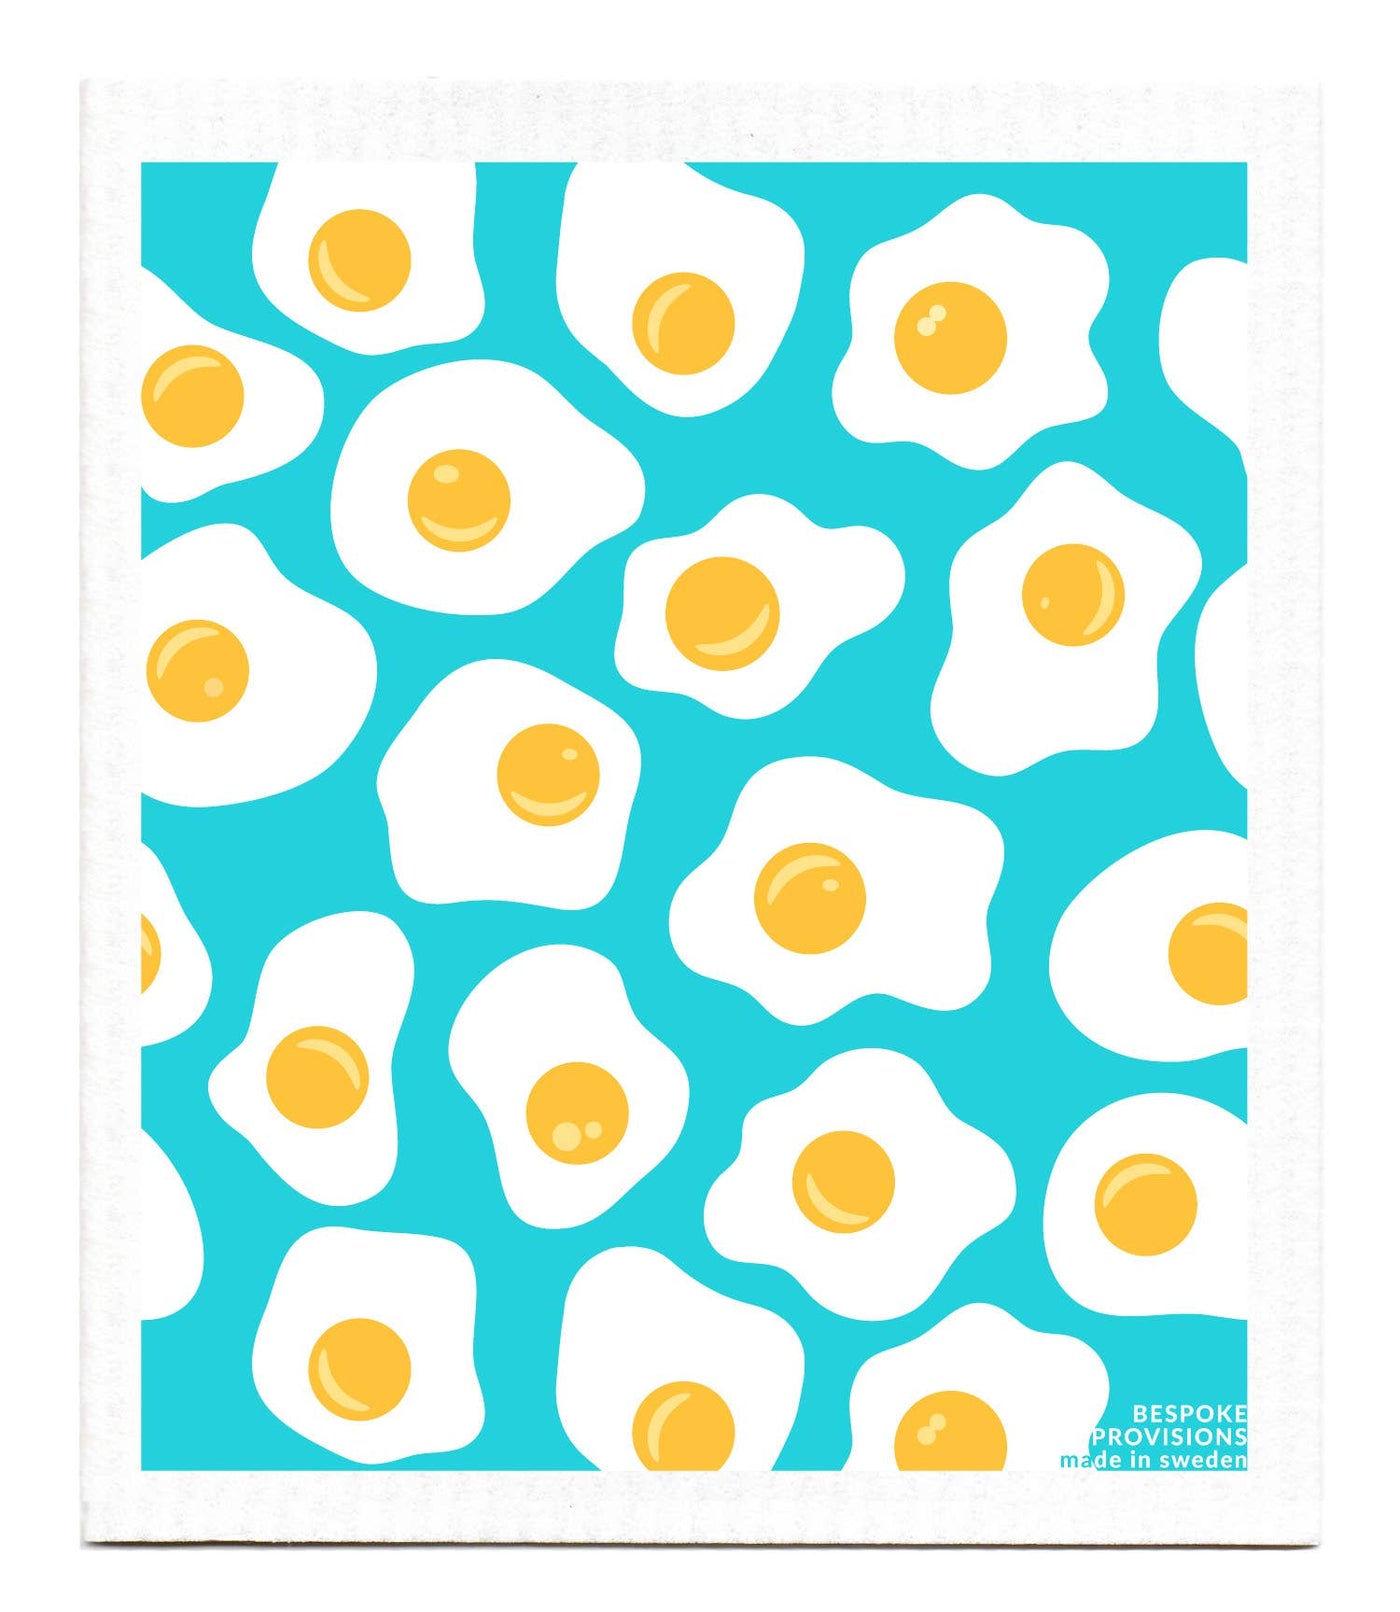 Eggs Swedish Dishcloth